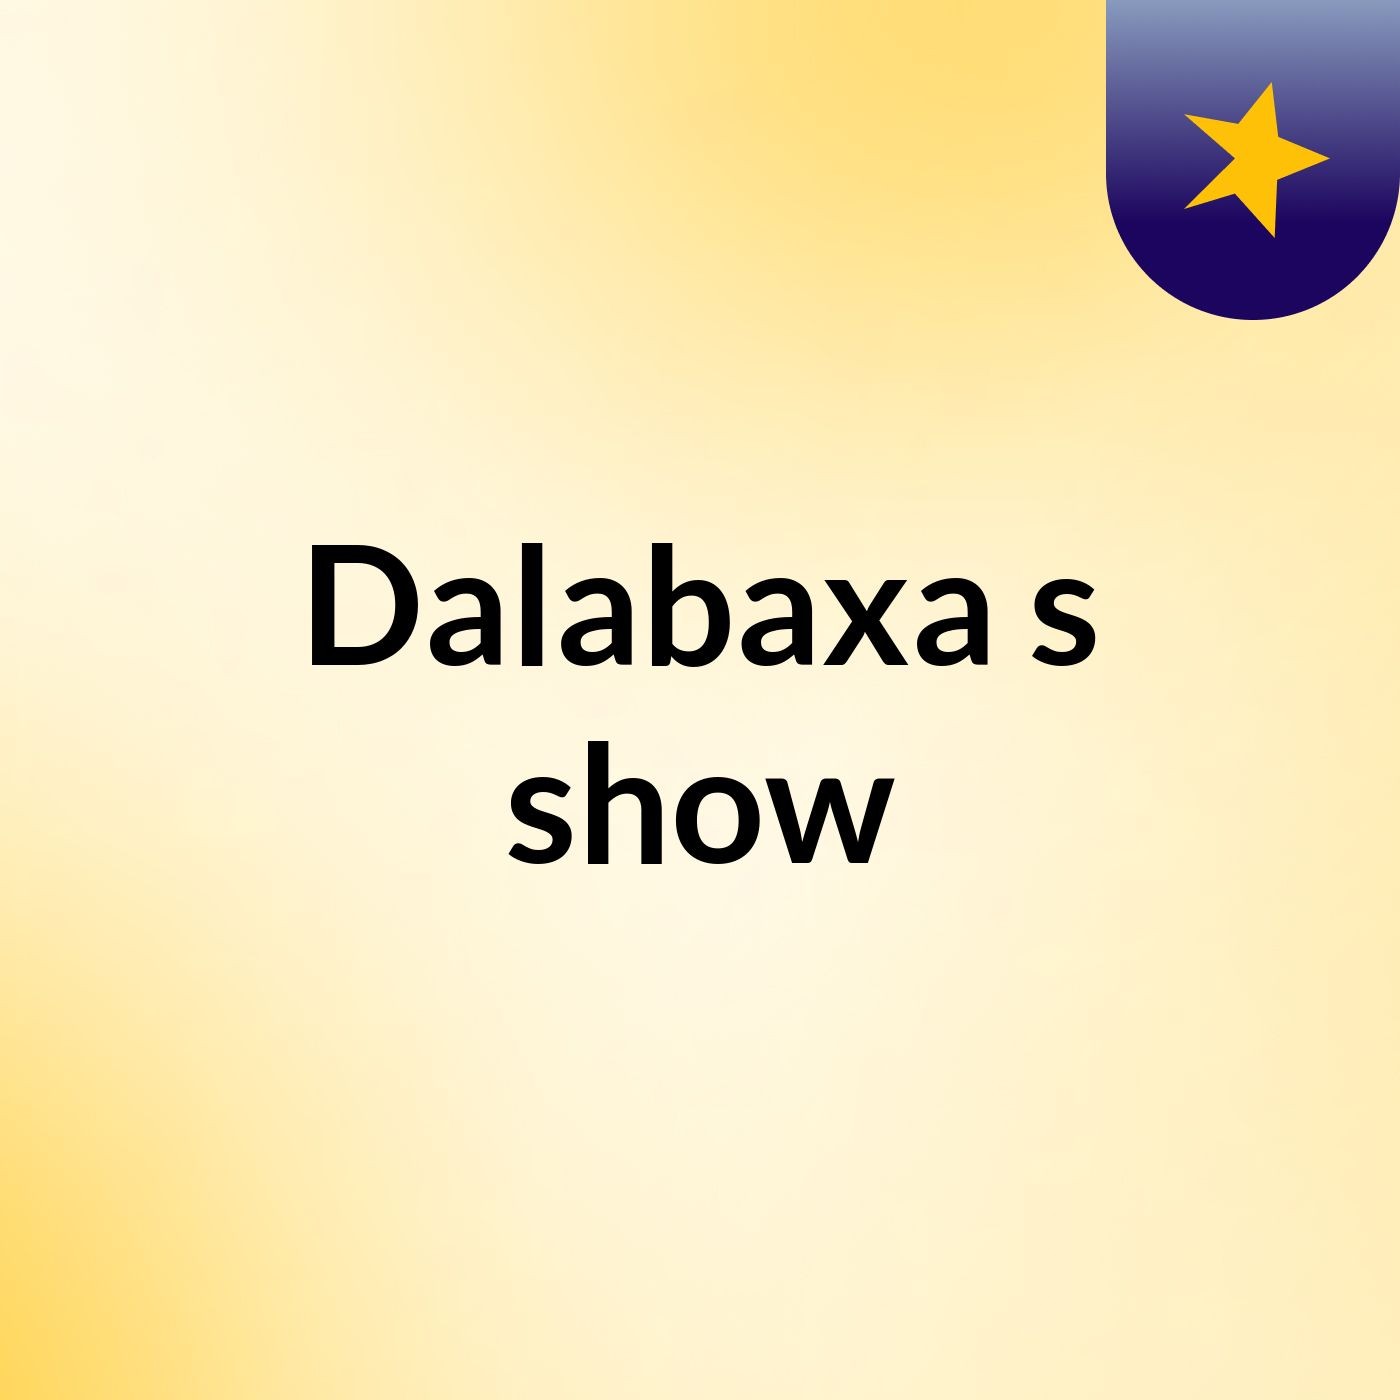 Dalabaxa's show